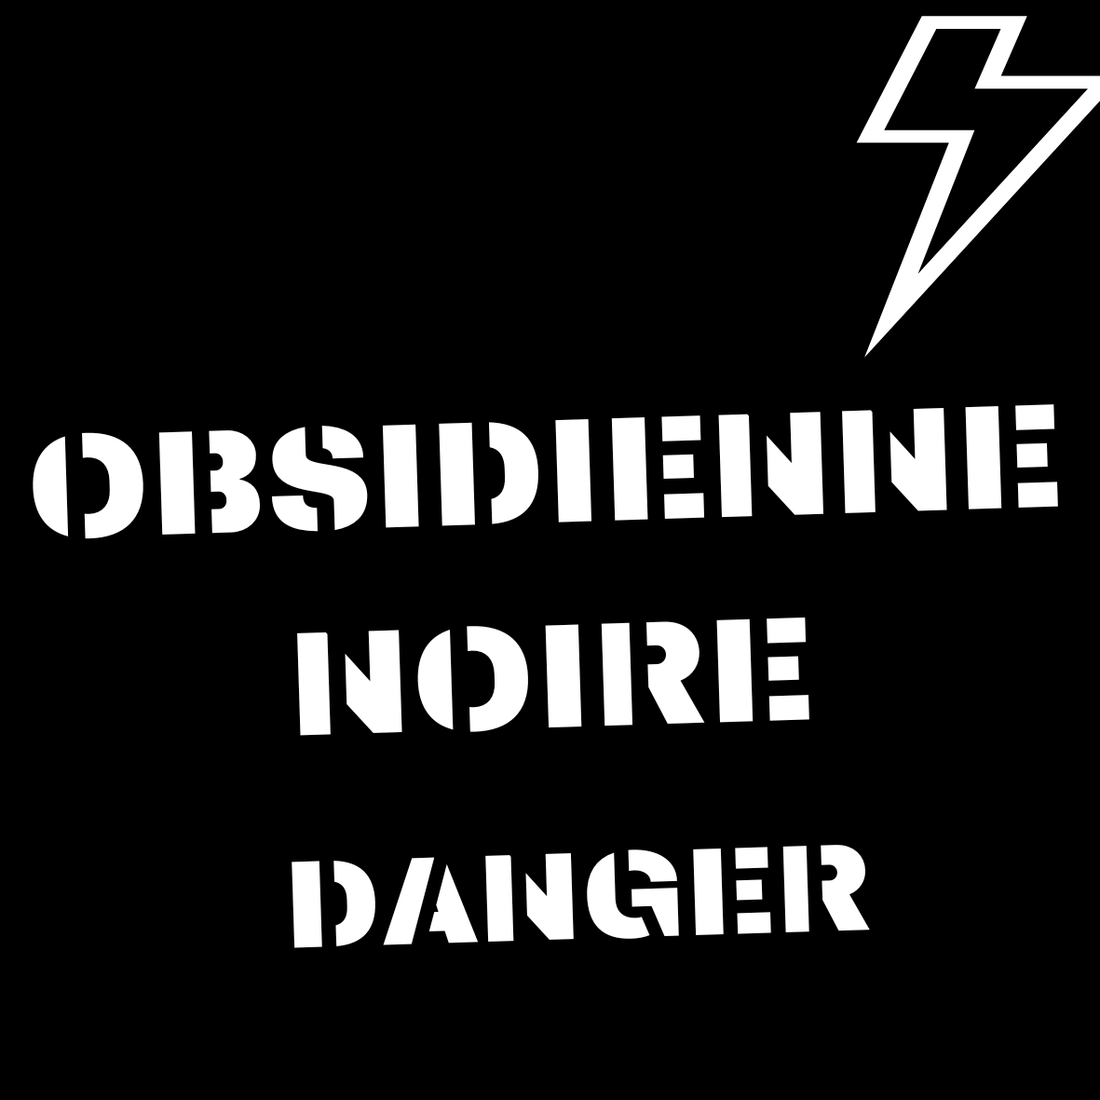 obsidienne noire danger